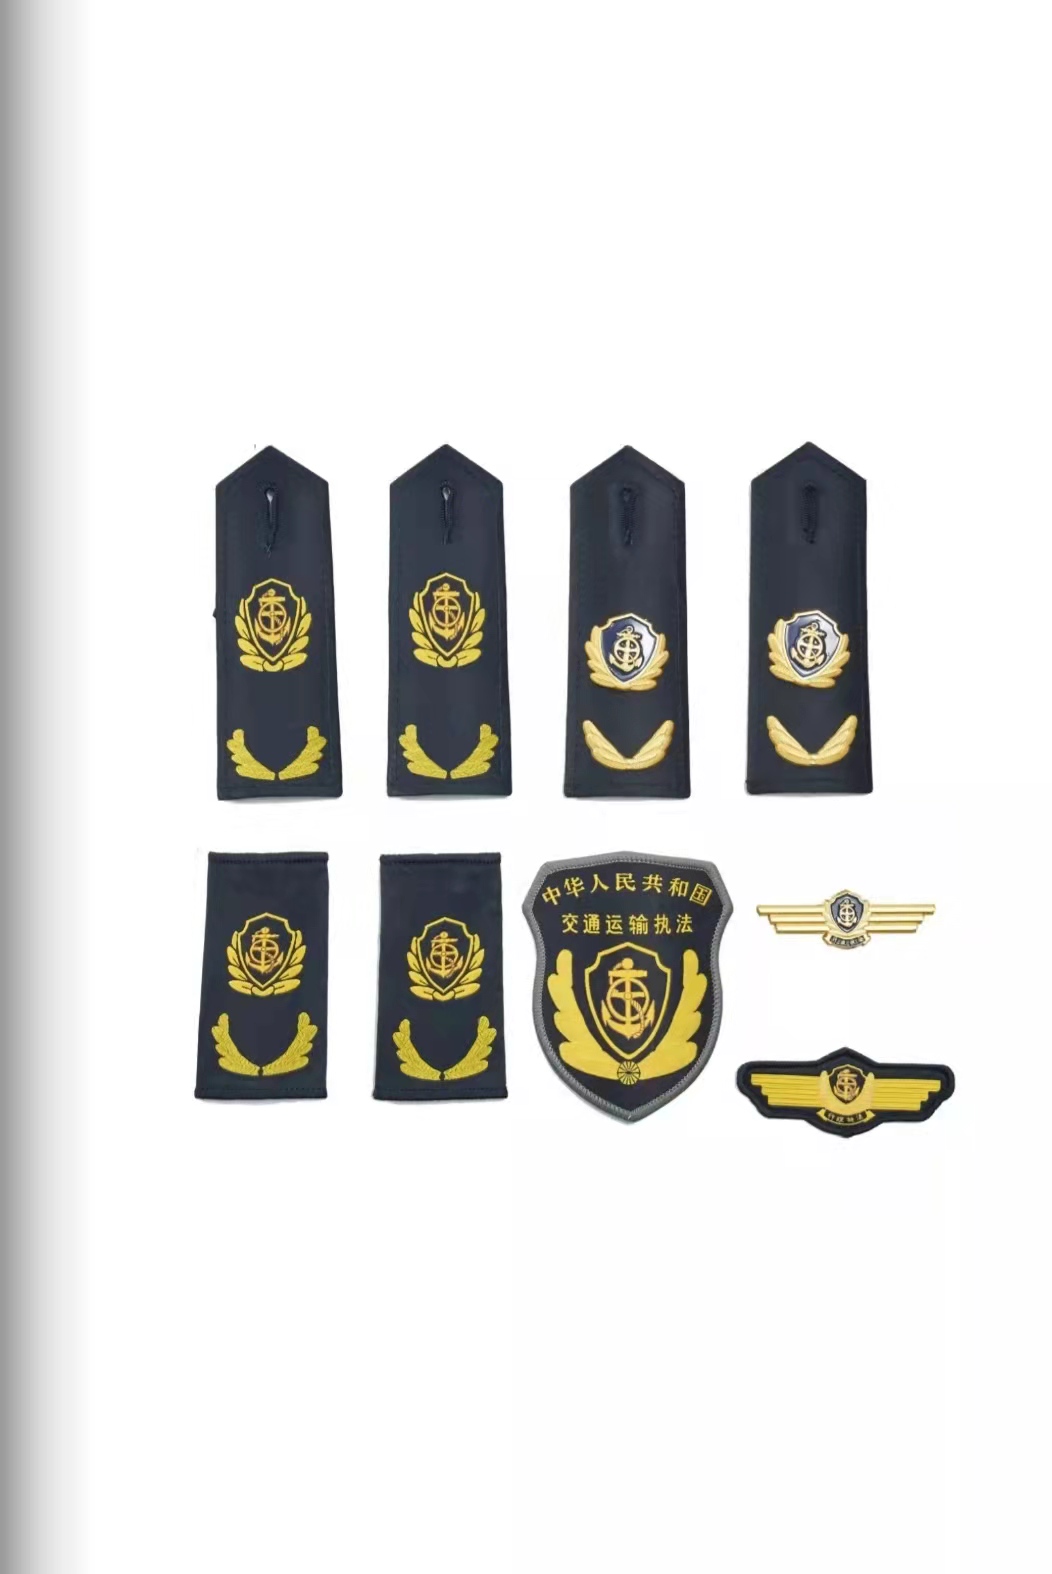 乌兰察布六部门统一交通运输执法服装标志